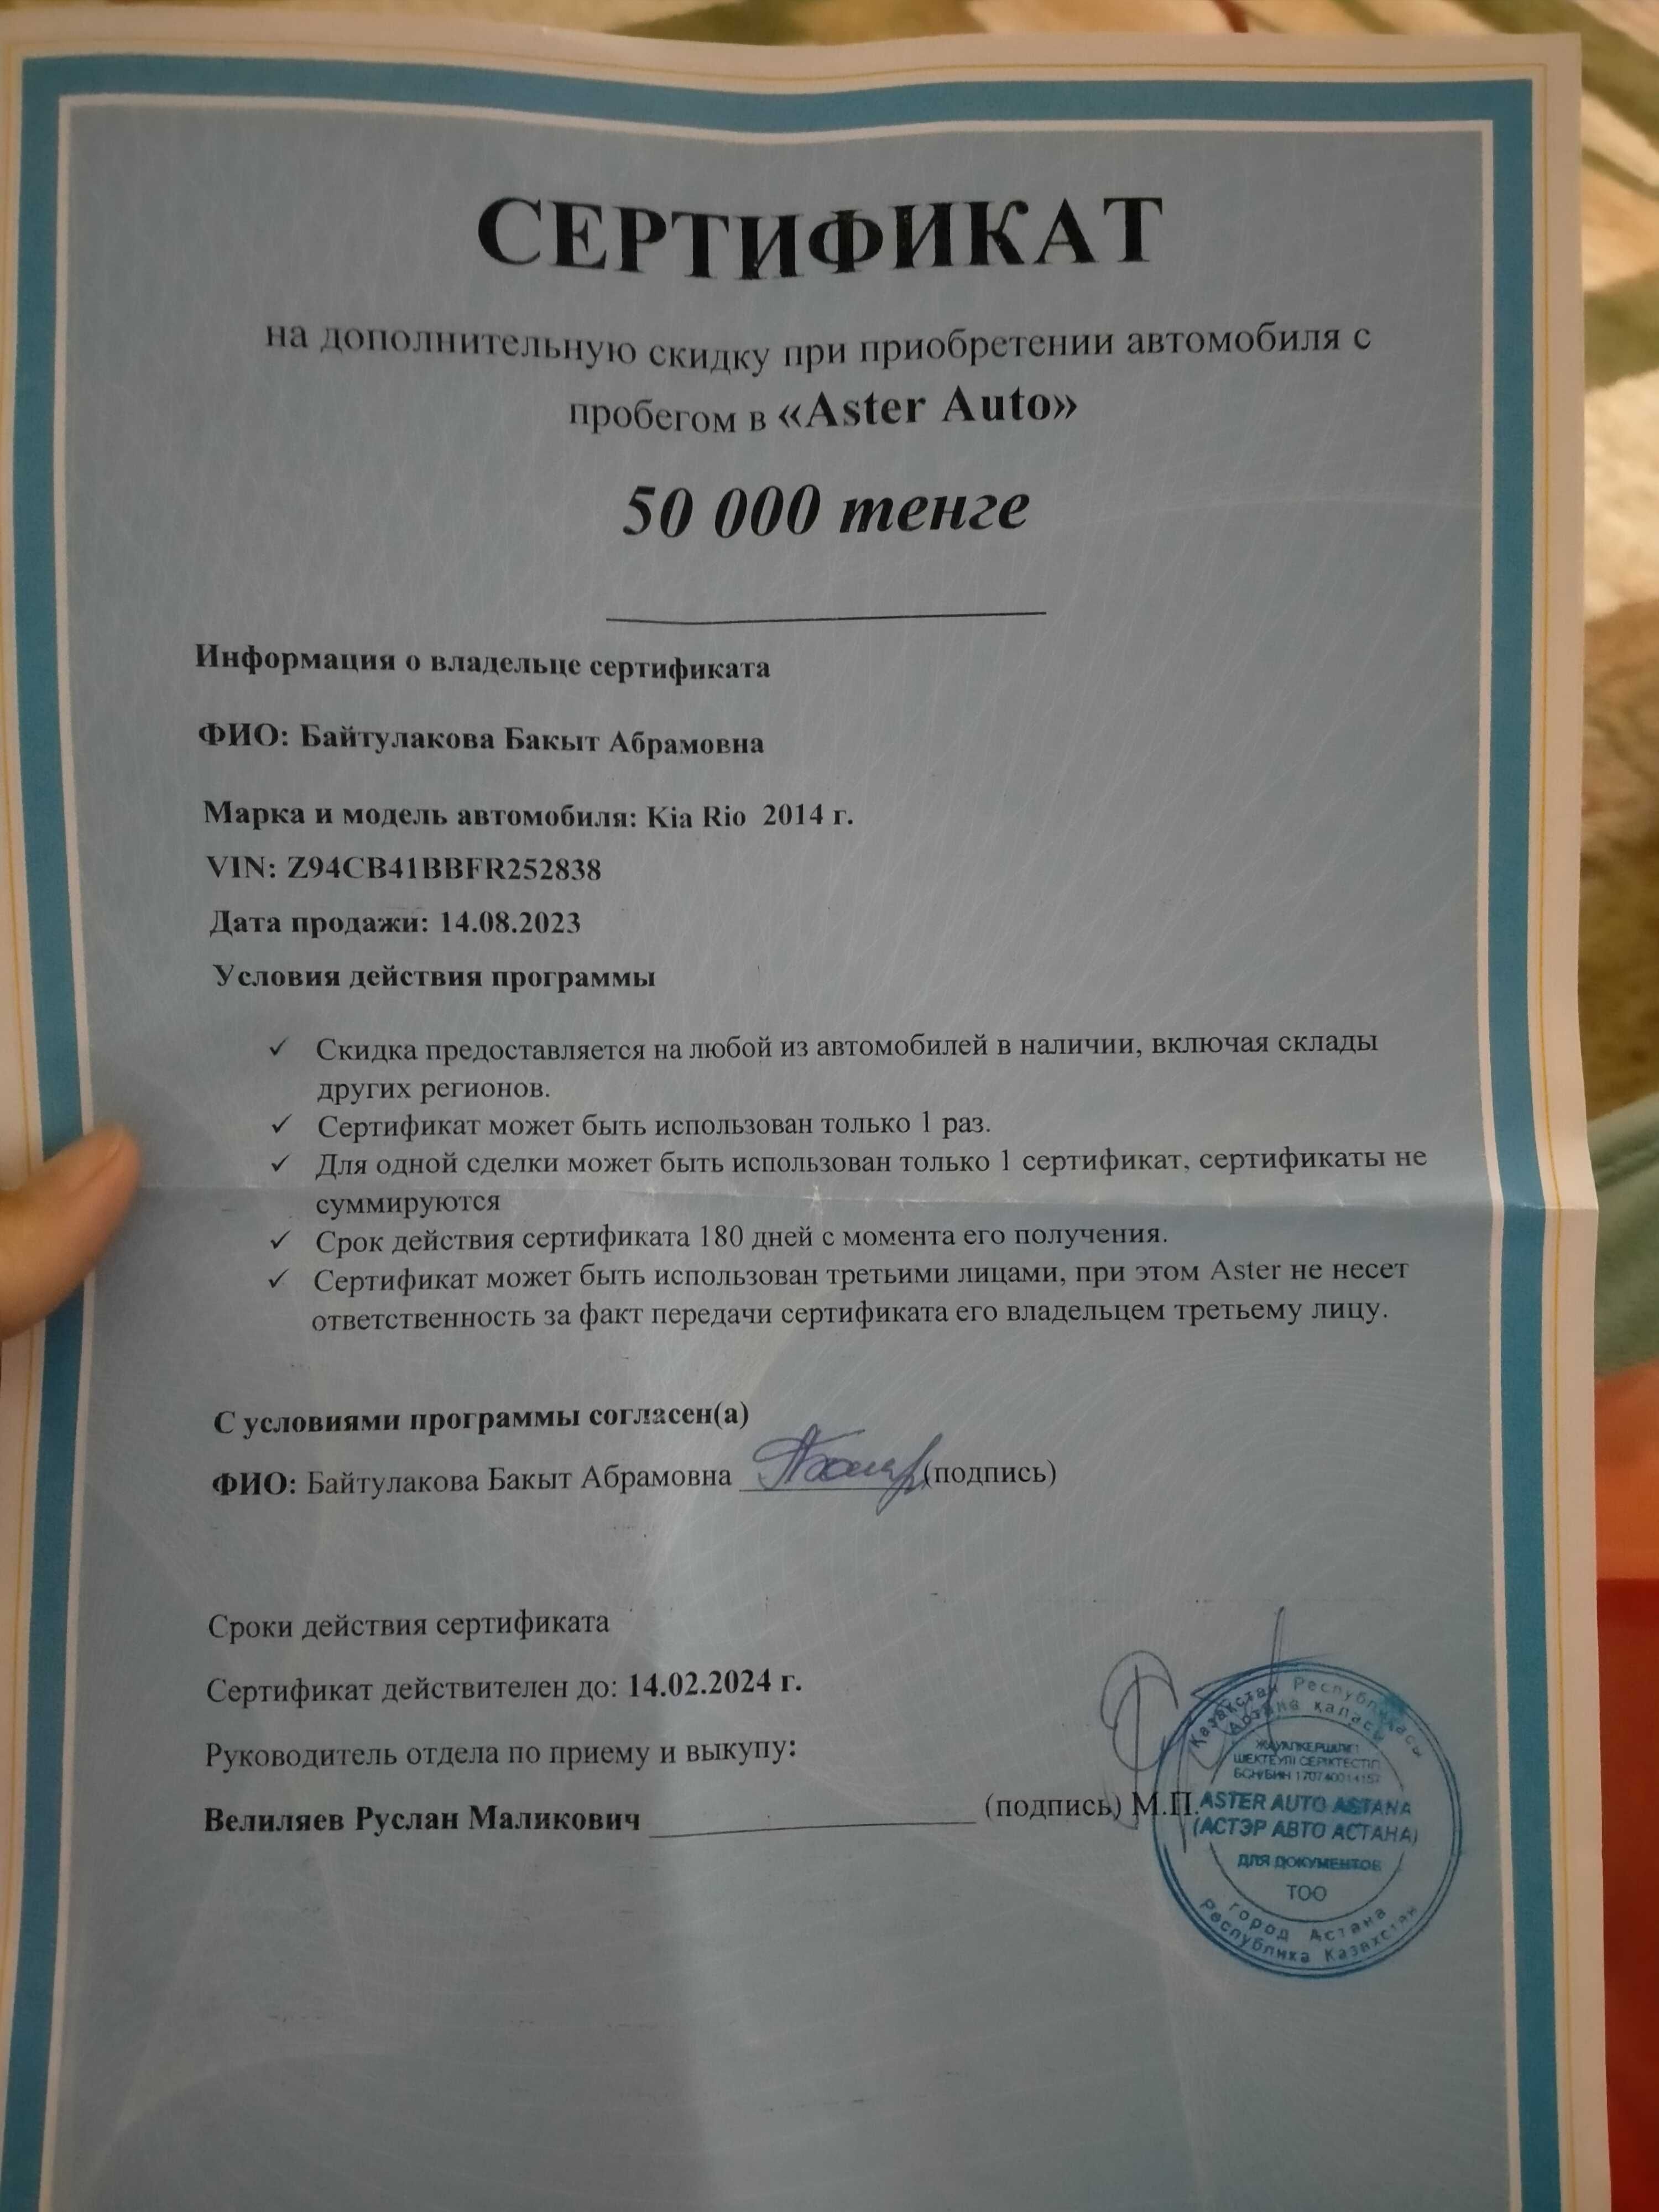 Сертификат скидочный на приобретение авто в Астер авто